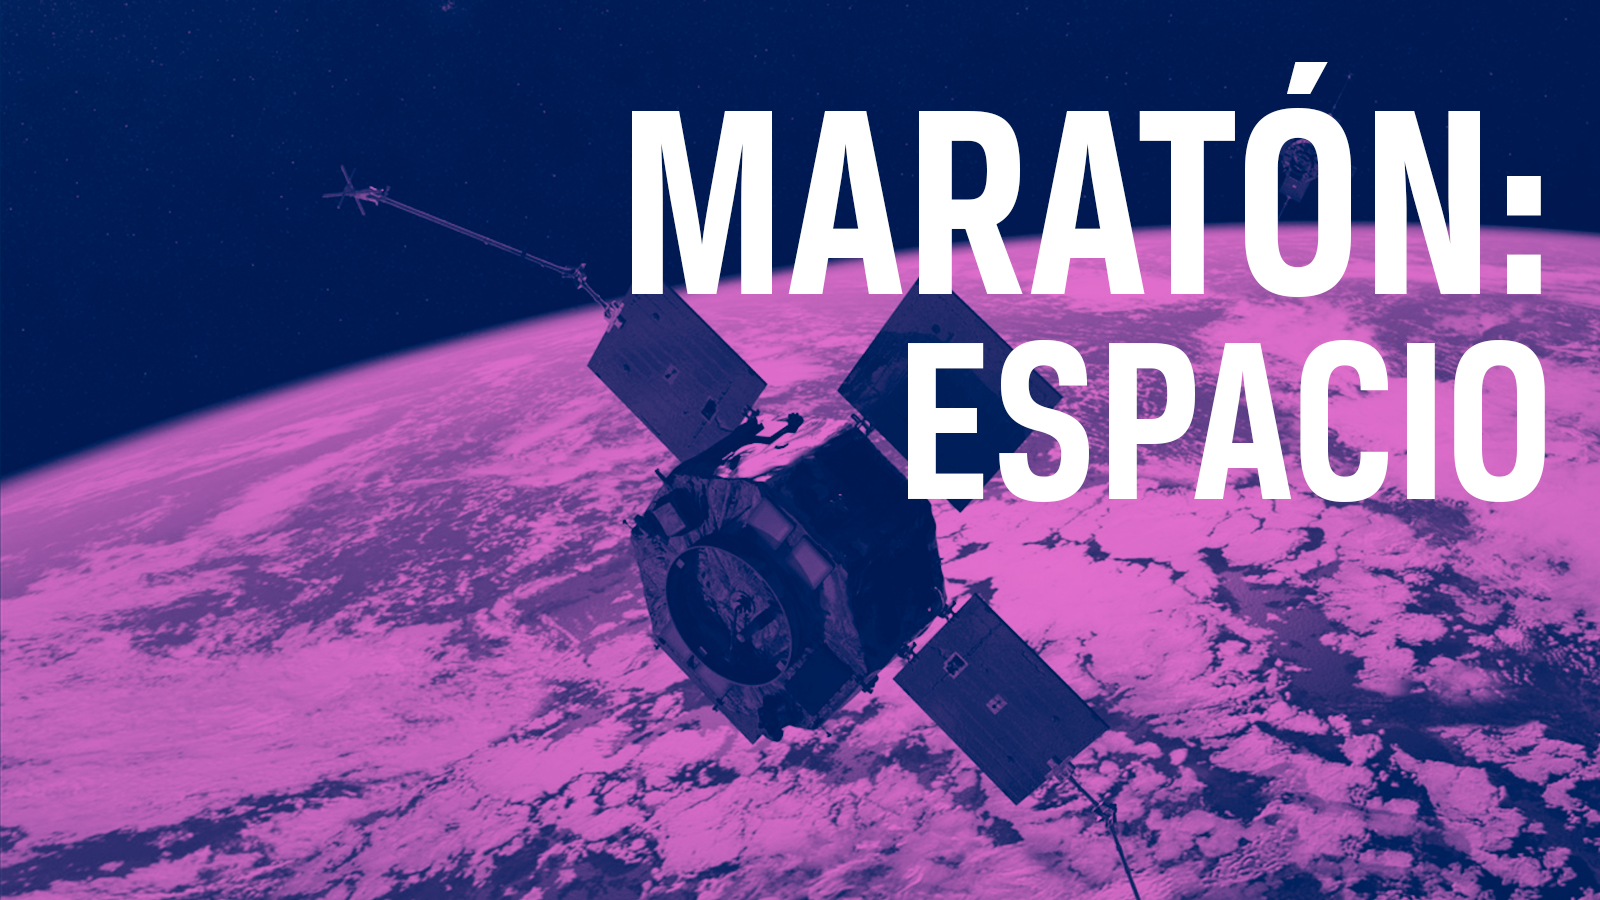 Maratón espacio